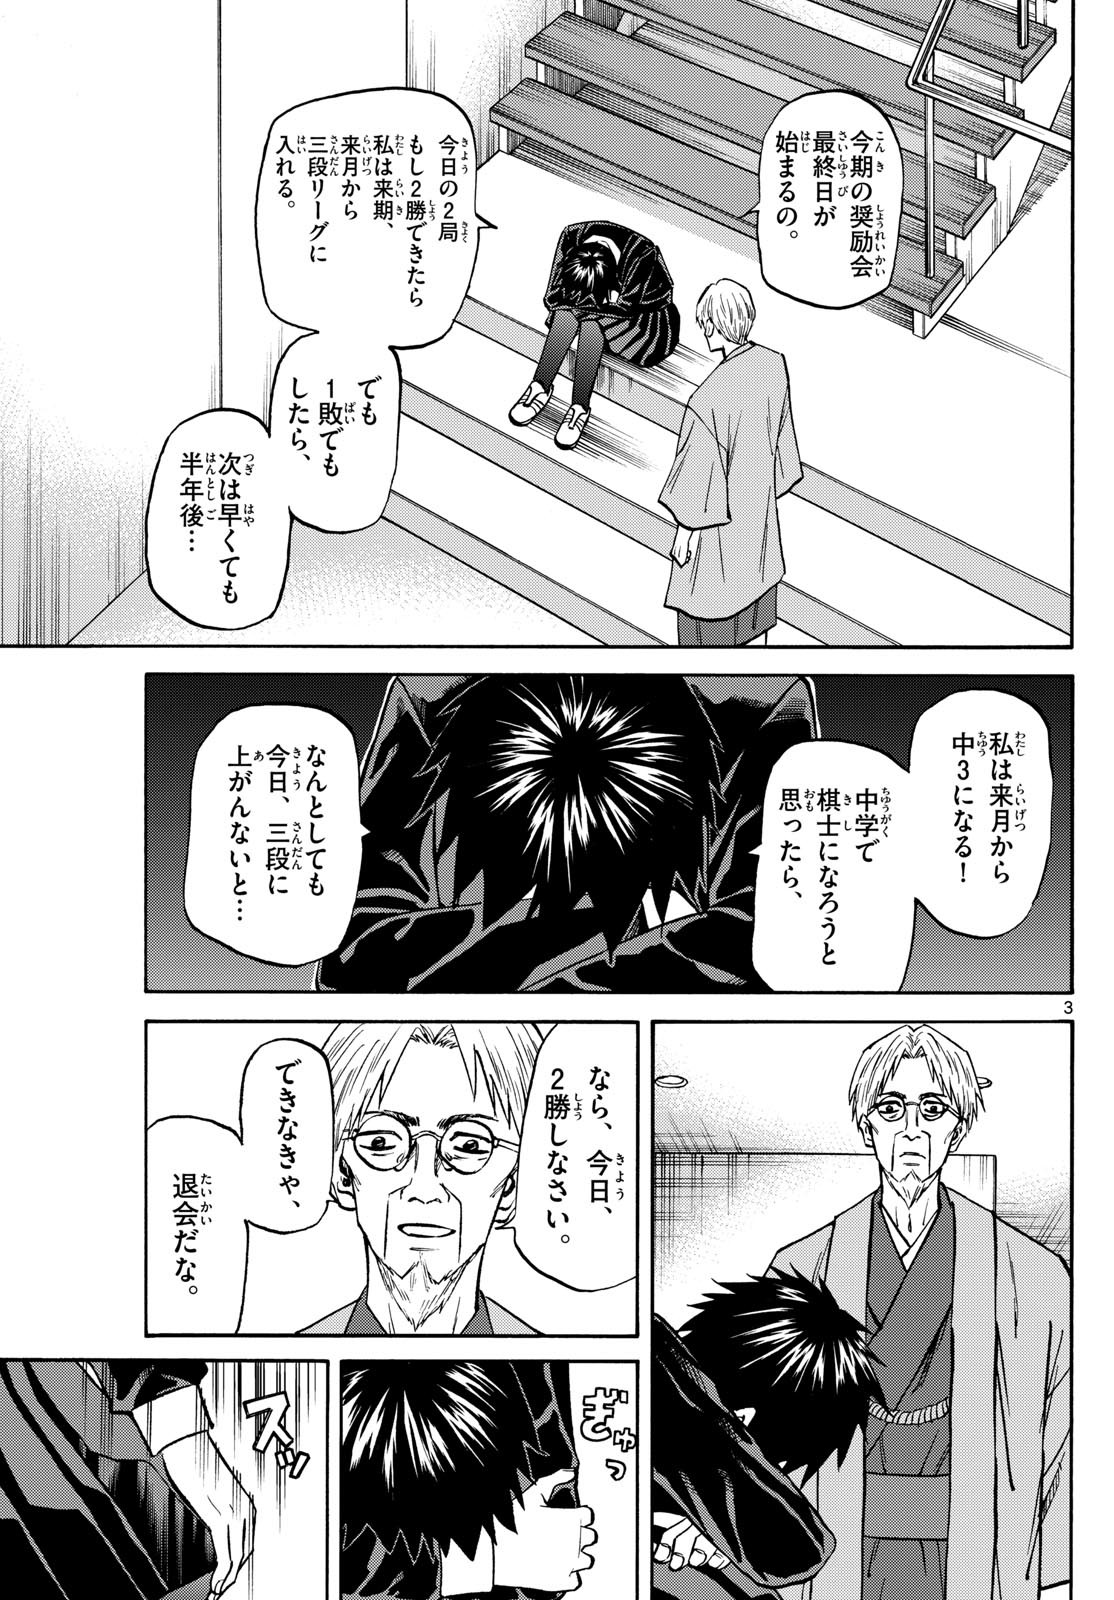 Ryu-to-Ichigo - Chapter 181 - Page 3